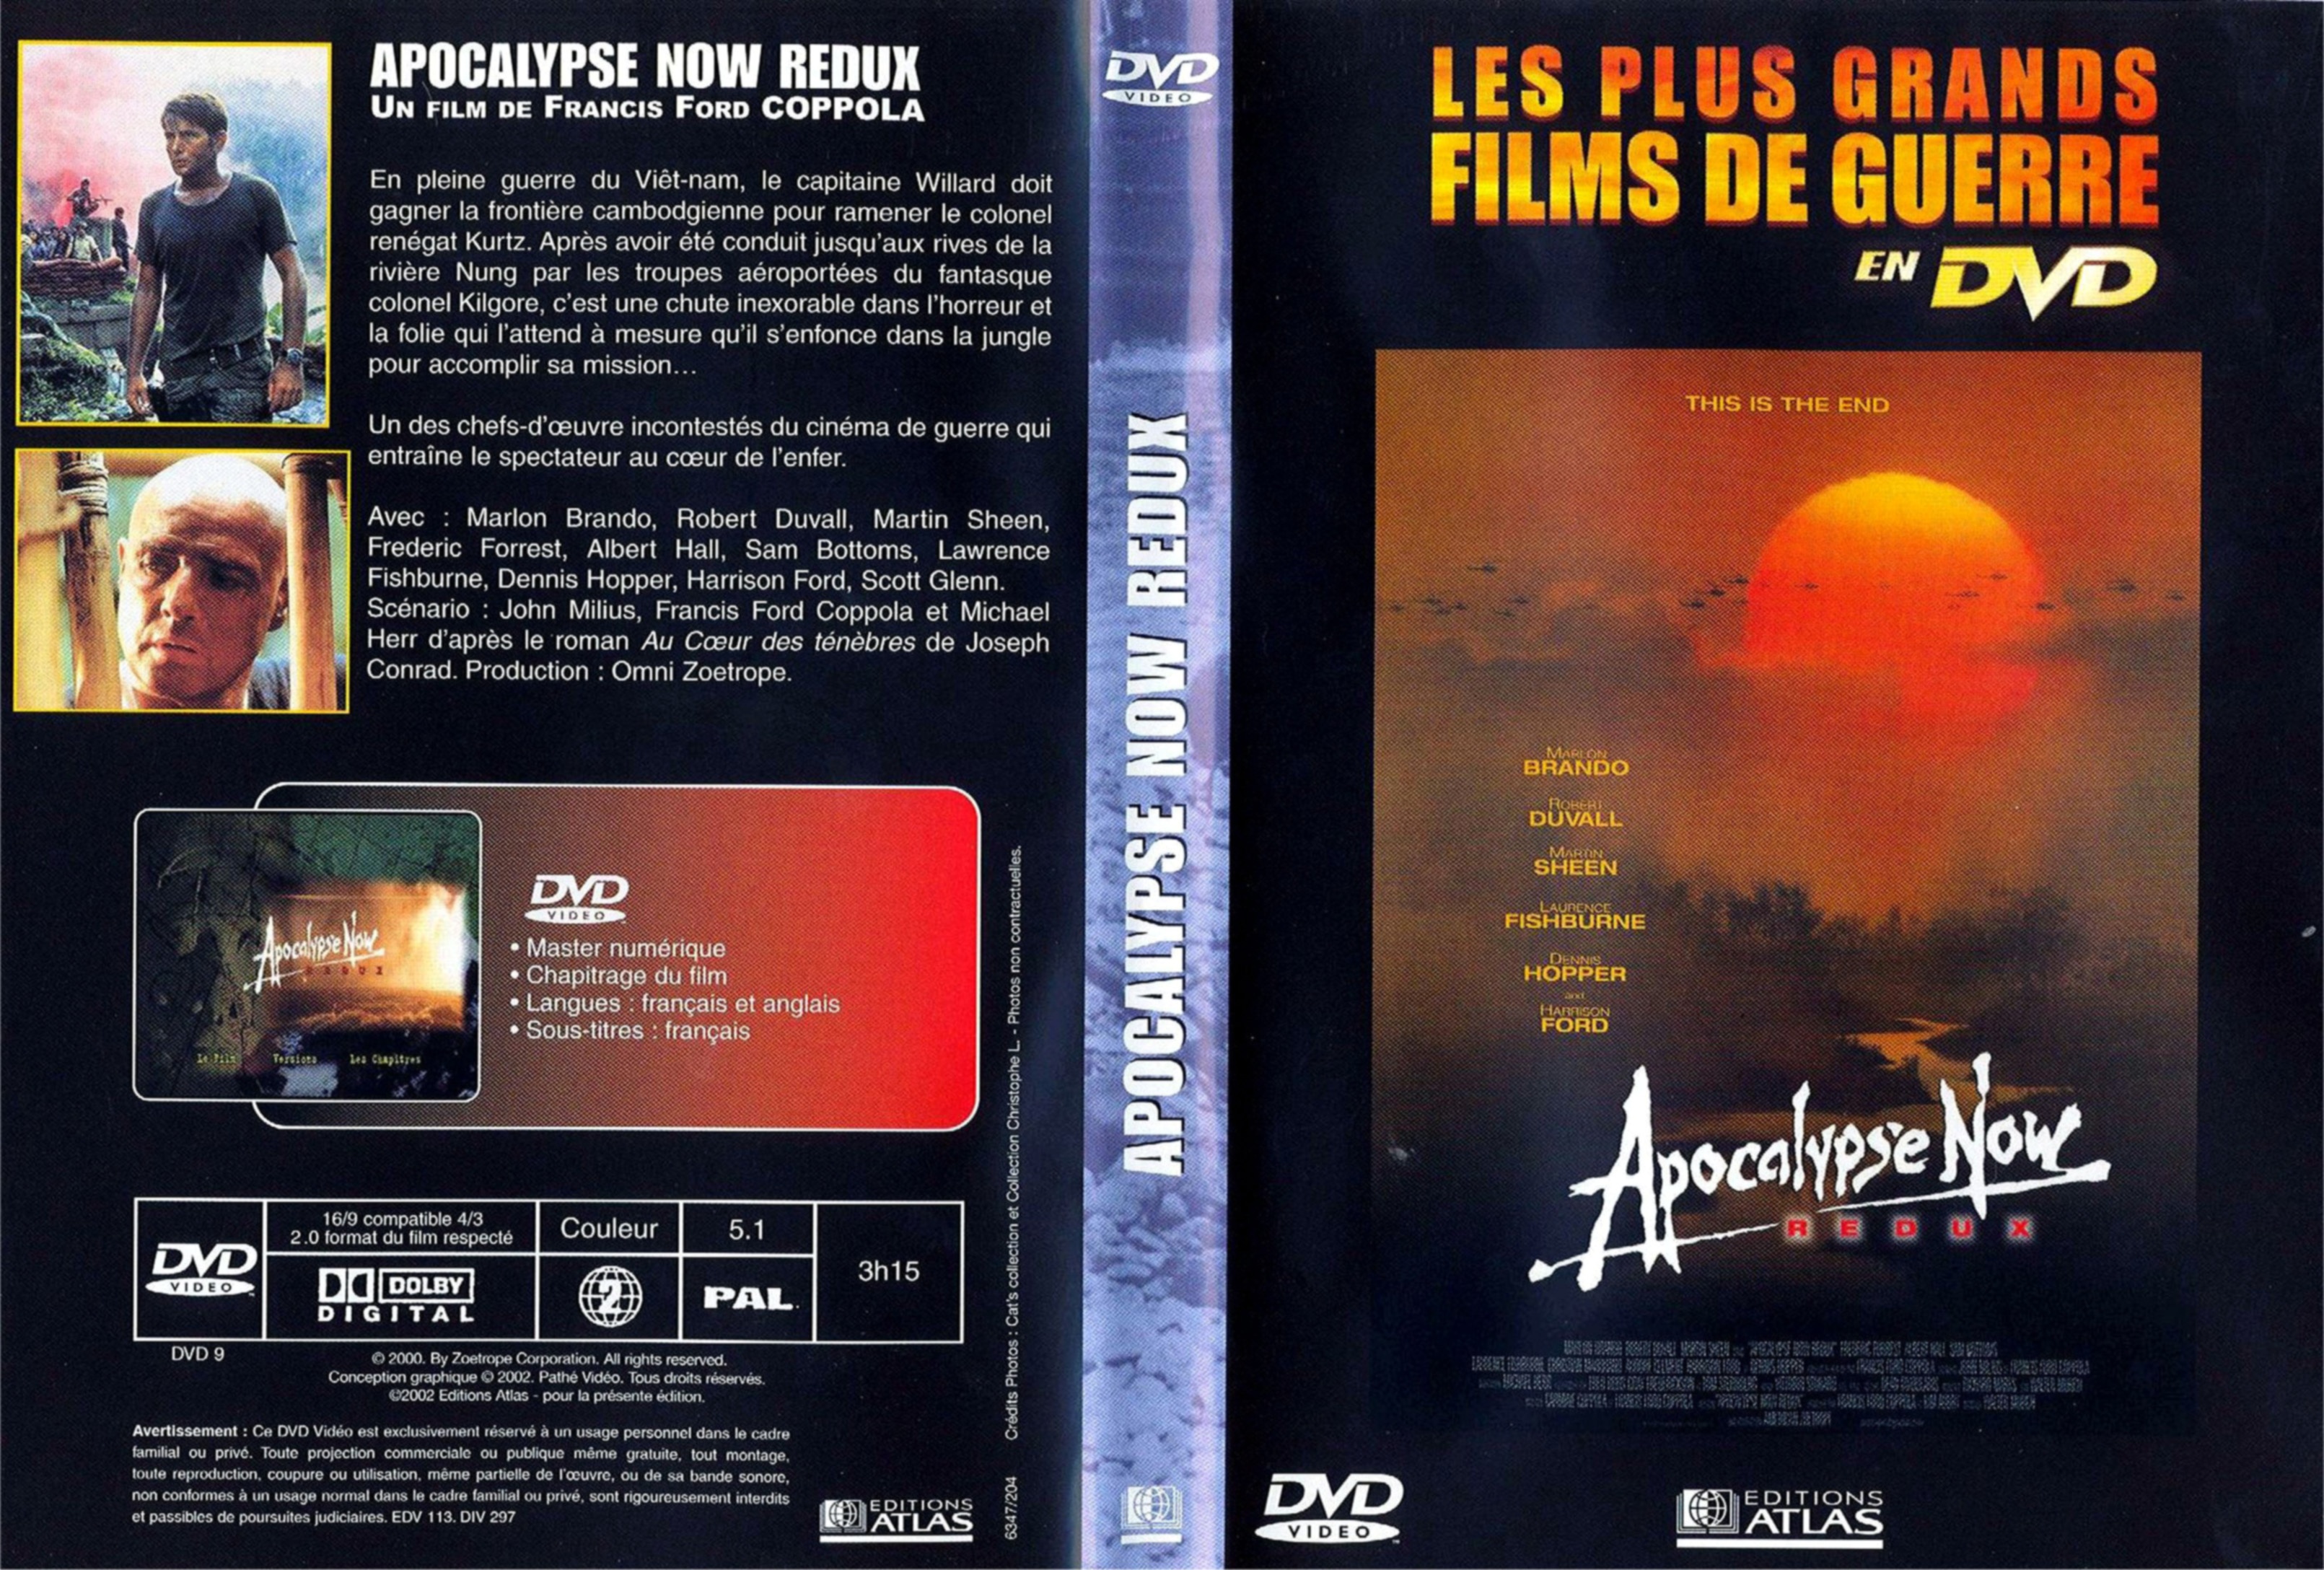 Jaquette DVD Apocalypse now redux v2